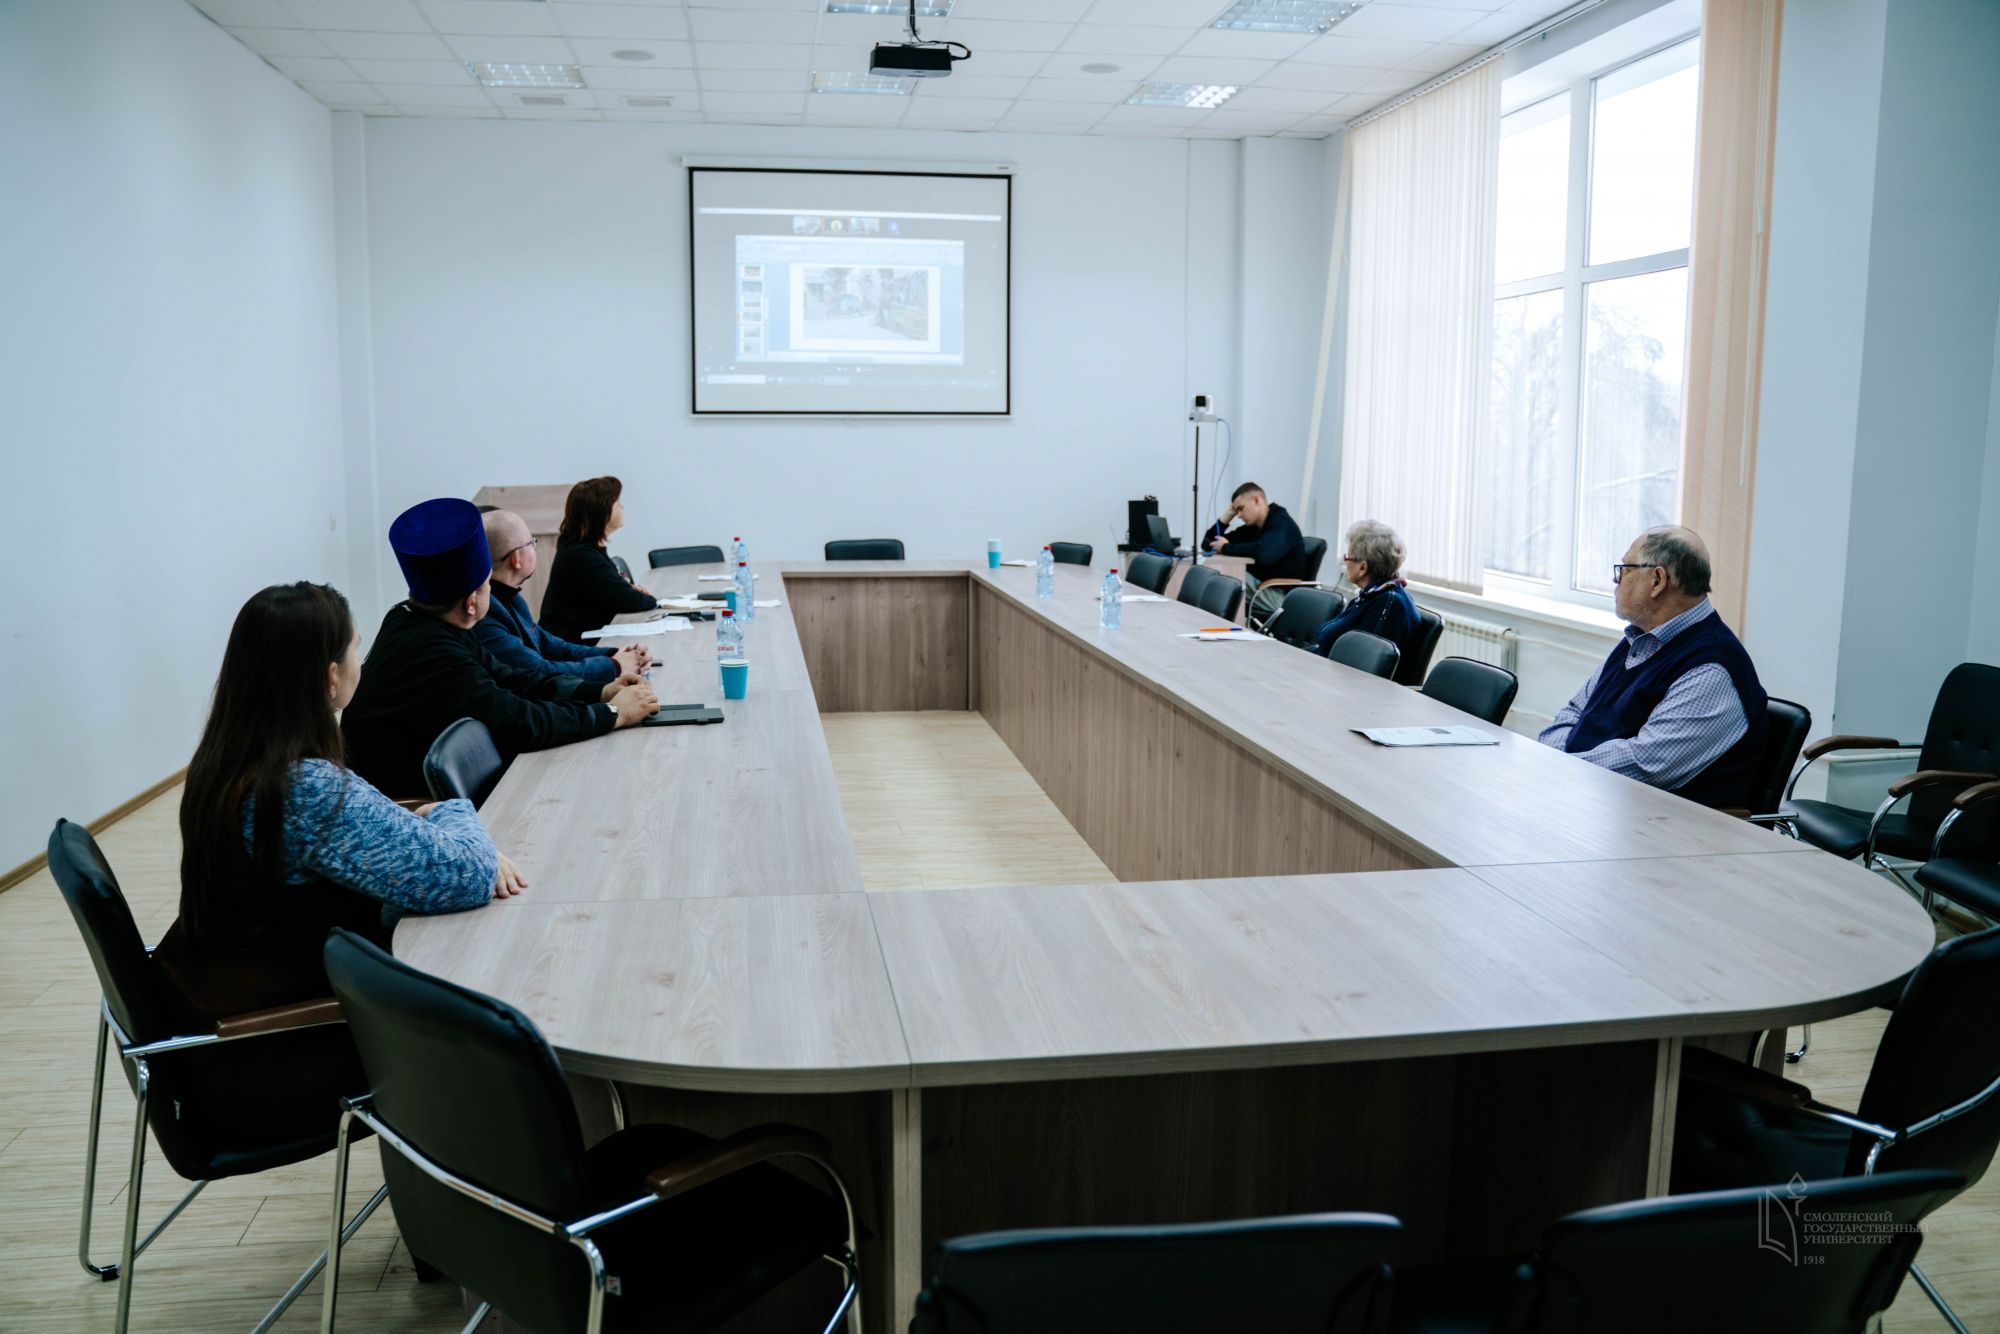 26-27 октября на социологическом факультете СмолГУ прошли заседания XXXIV Всероссийского научного коллоквиума «Социальные трансформации»